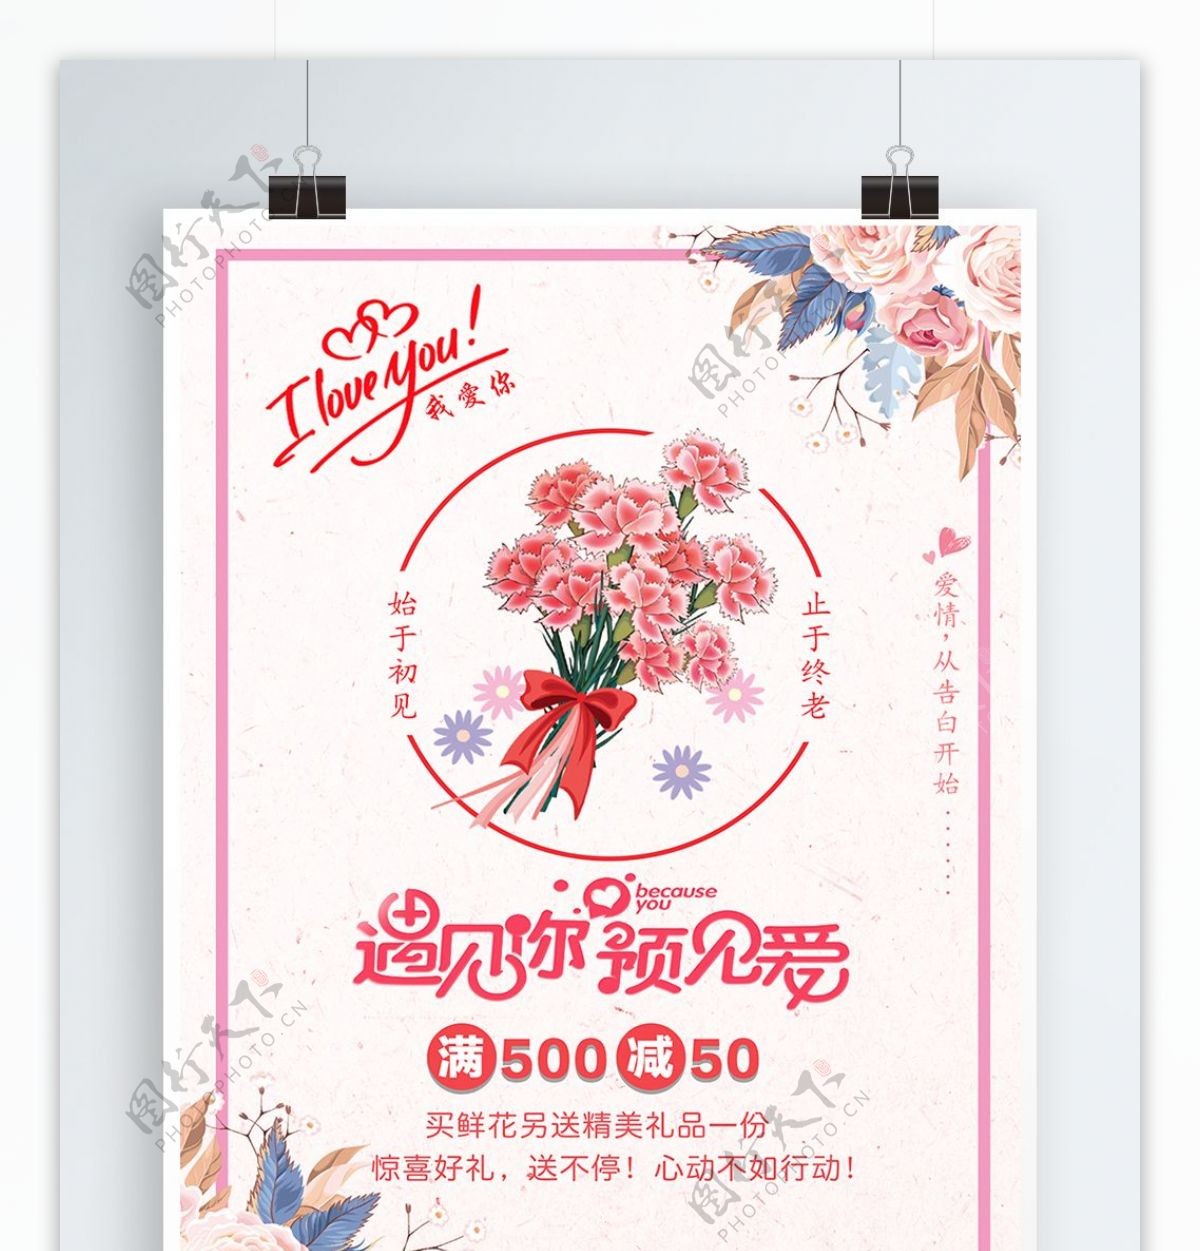 2018文艺浪漫情人节促销宣传海报